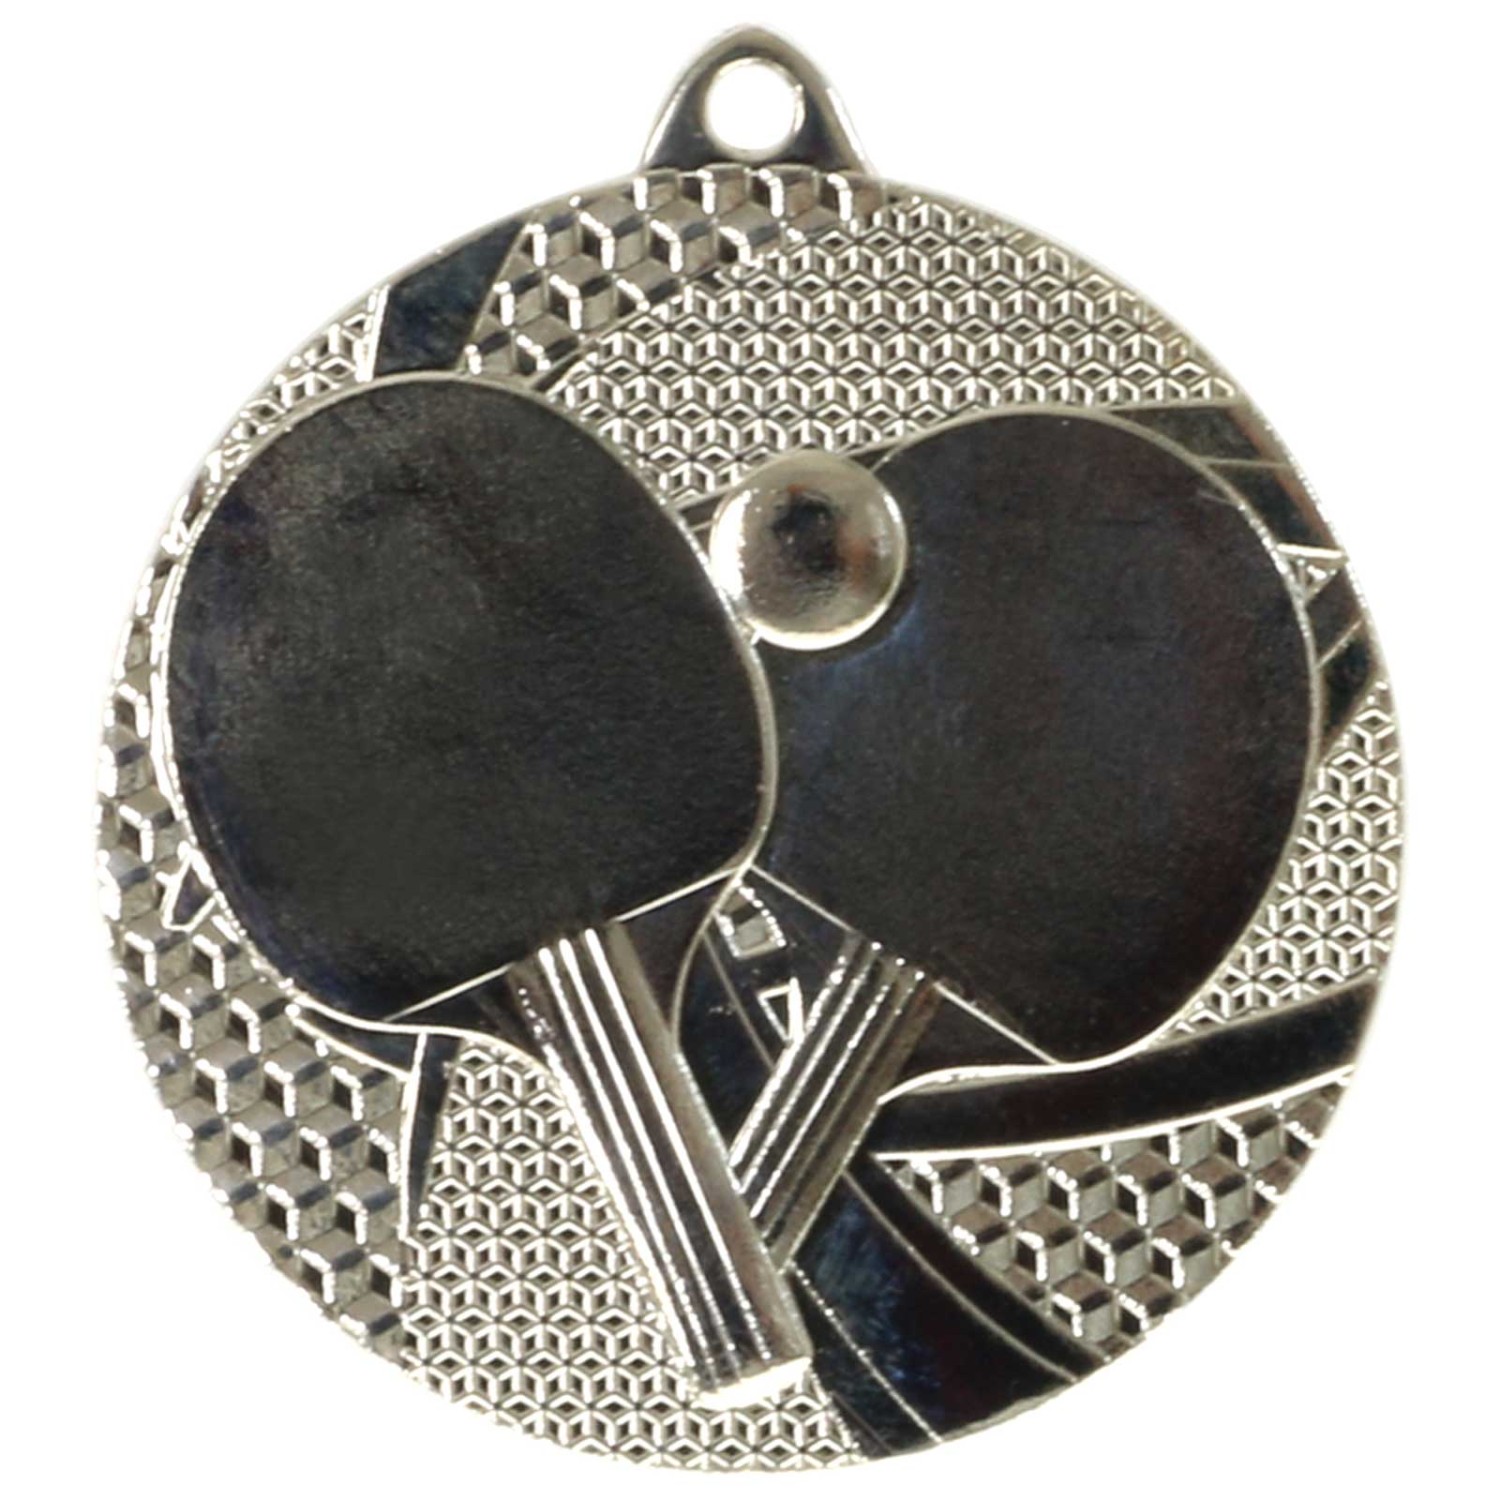 2. Foto Medaille Tischtennis Tischtennis-Medaillen rund gold silber bronze (Sorte: Set je 1x gold / silber / bronze)